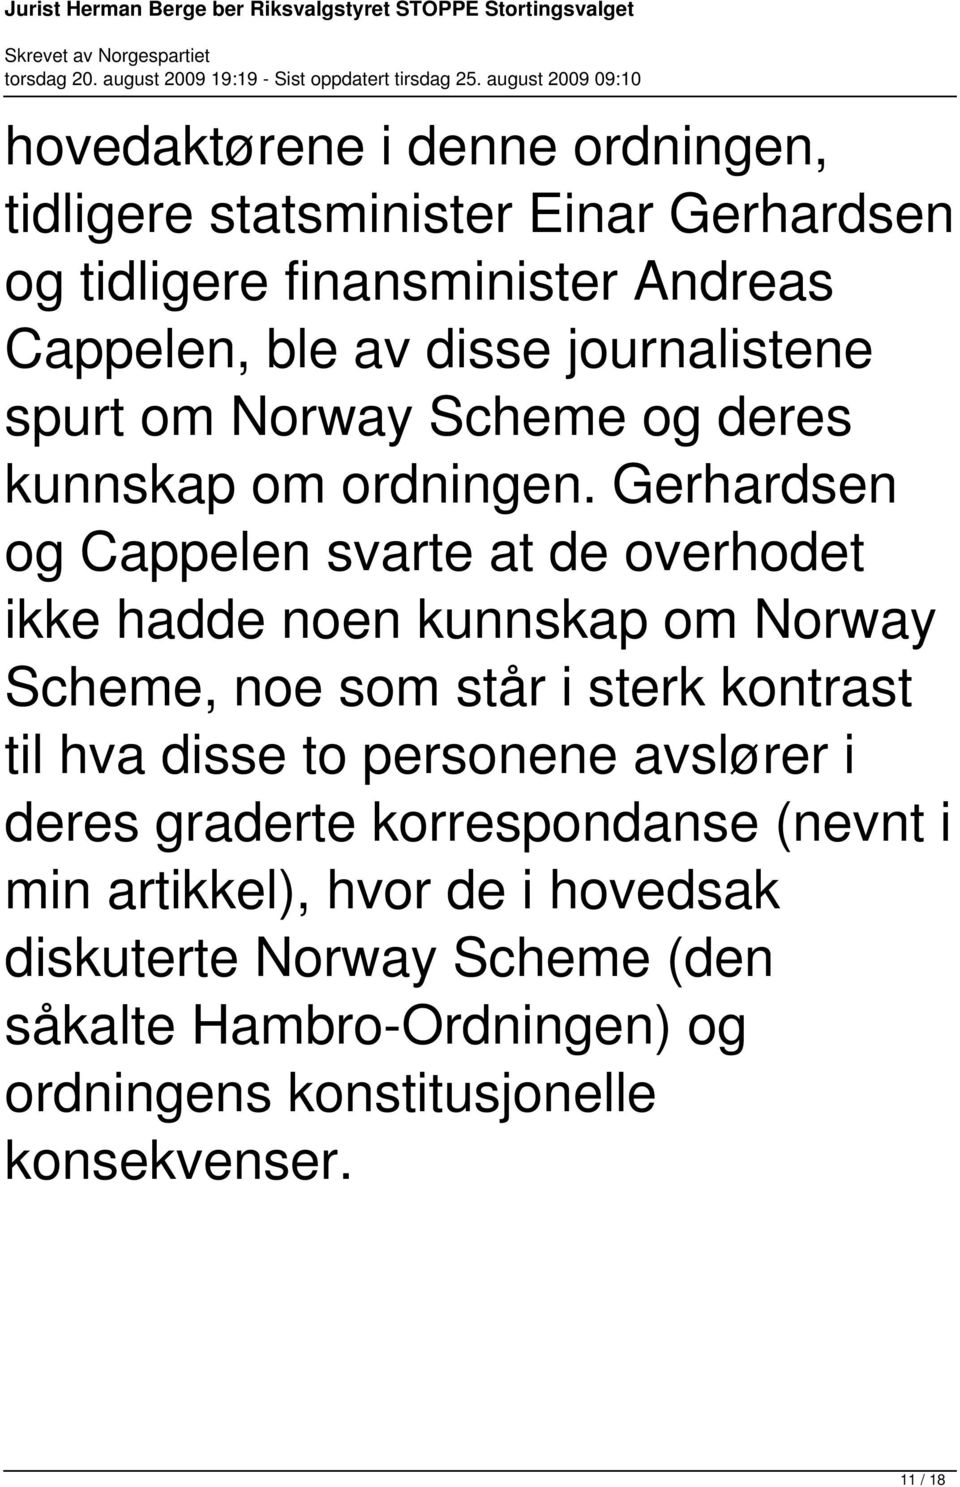 Gerhardsen og Cappelen svarte at de overhodet ikke hadde noen kunnskap om Norway Scheme, noe som står i sterk kontrast til hva disse